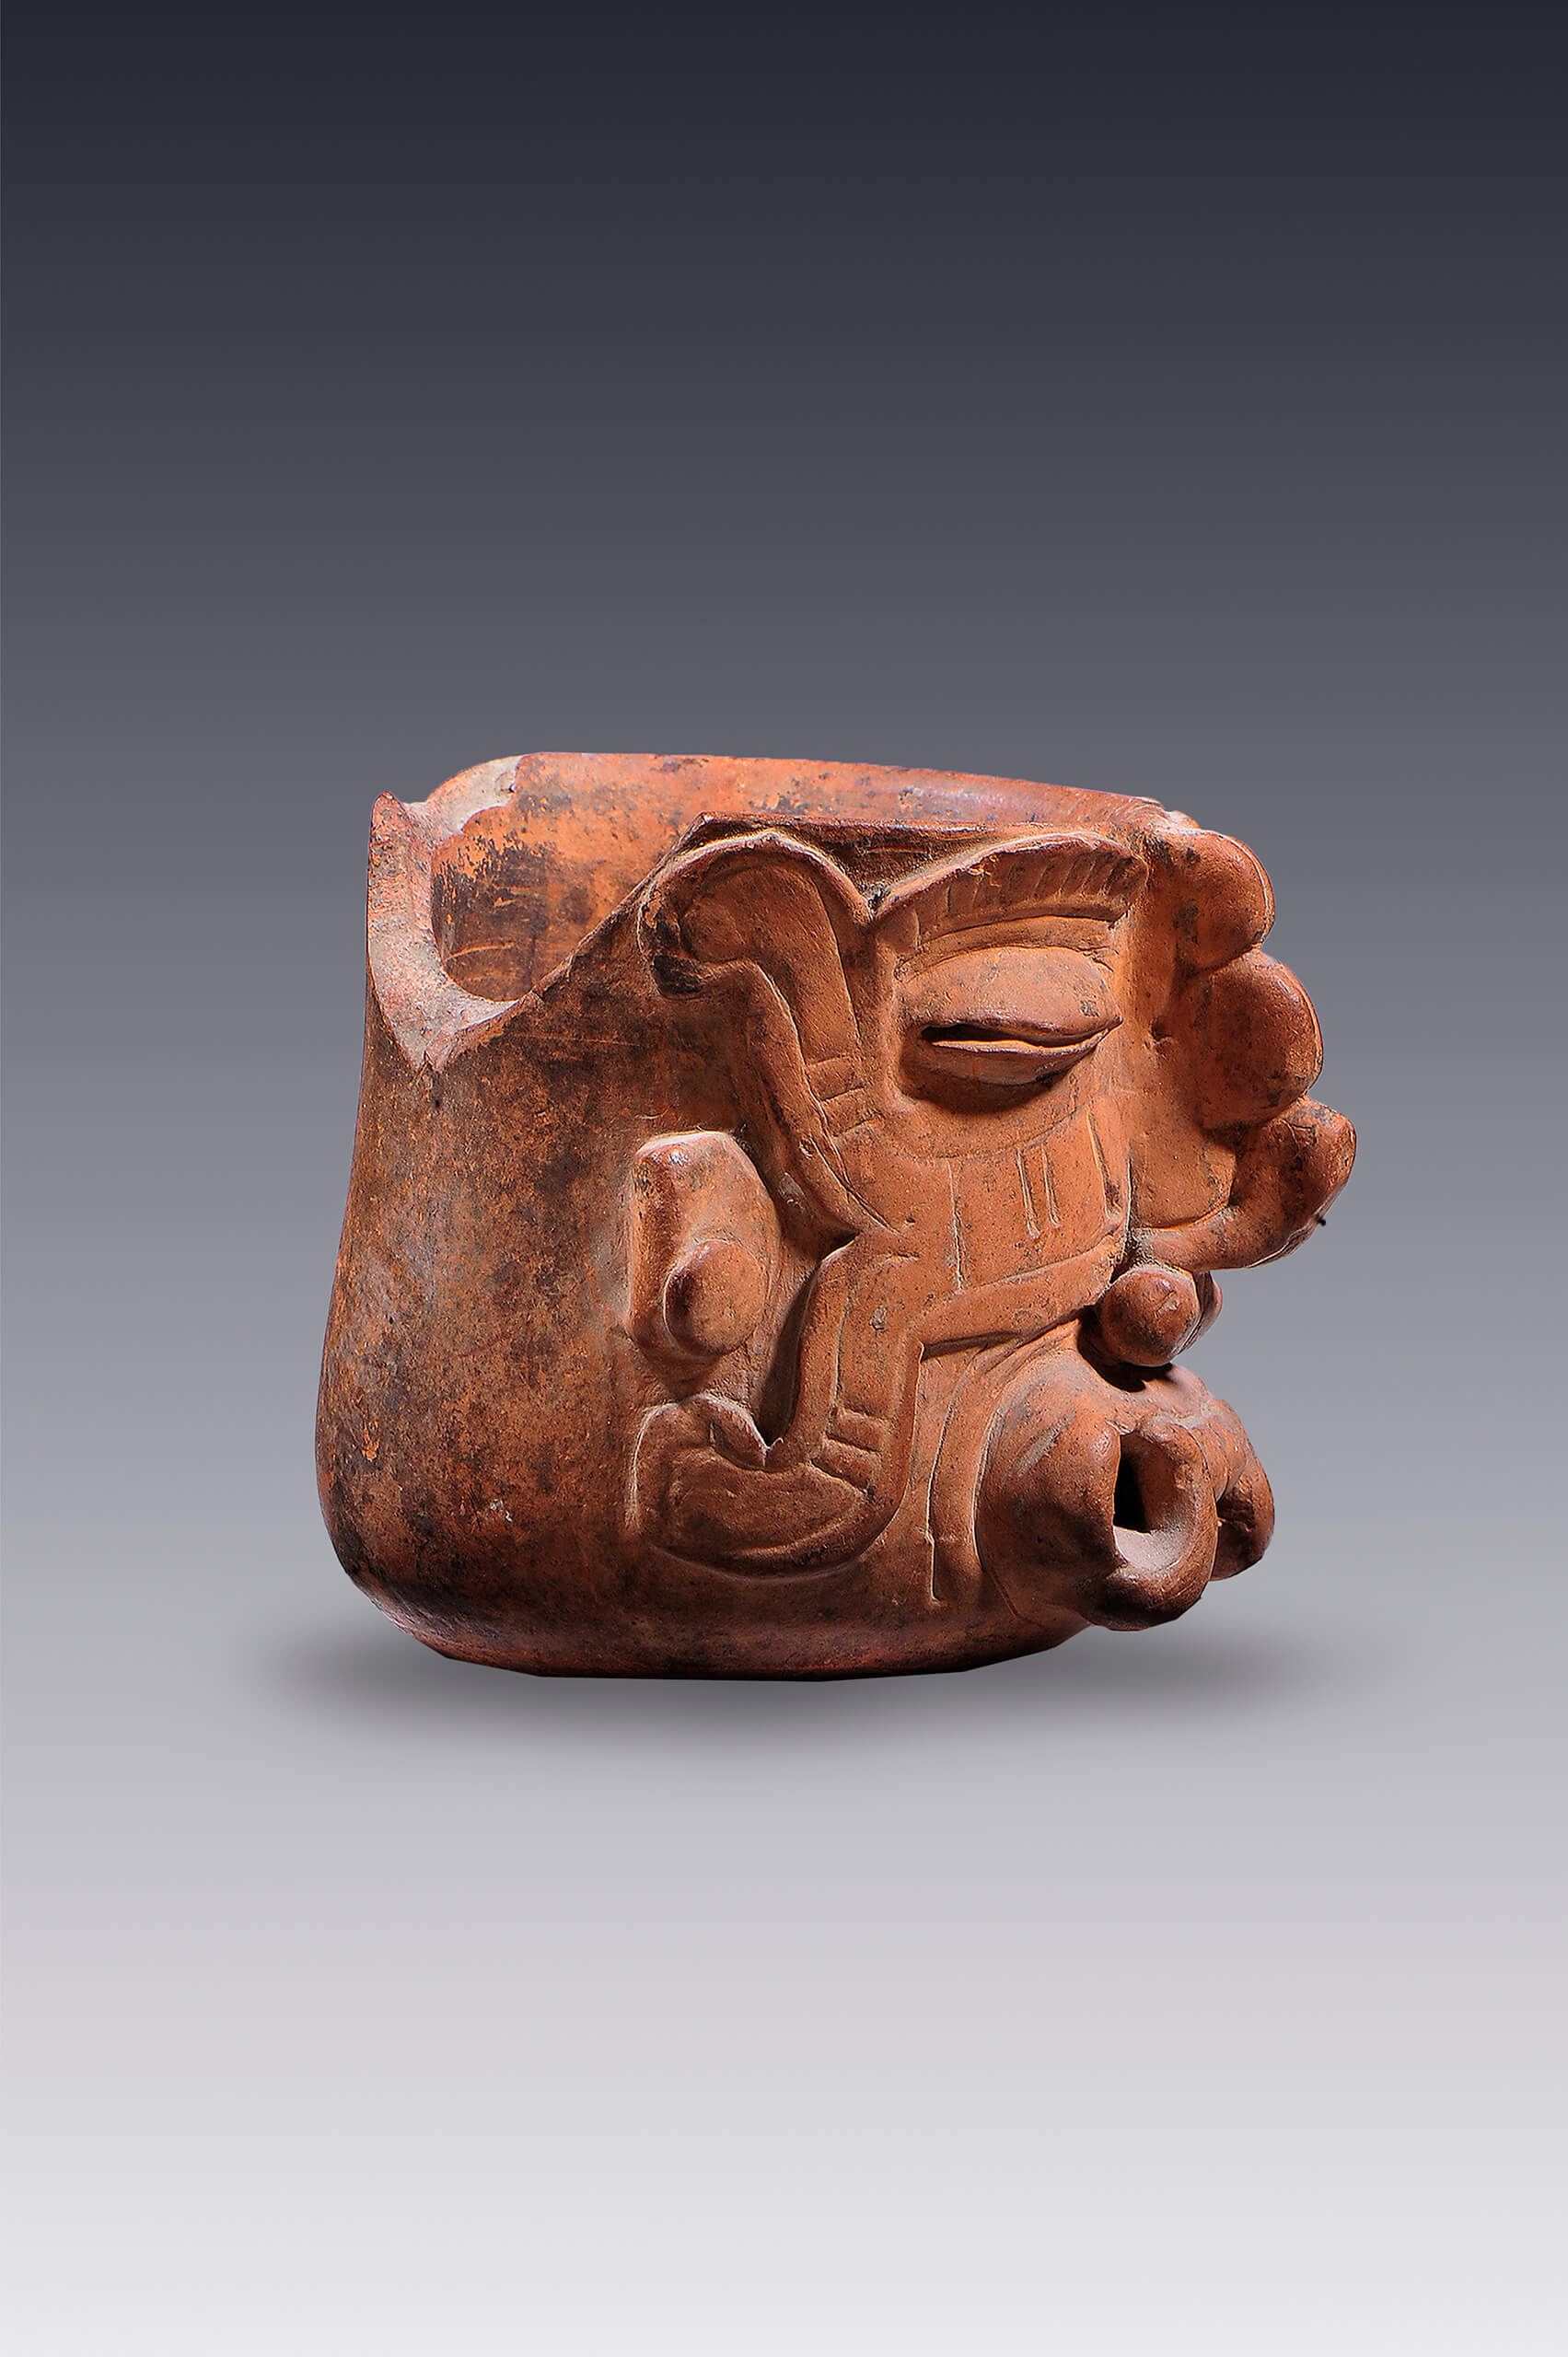 Vaso-efigie con representación de Tláloc, ¿Cocijo? | El tiempo en las cosas II. Salas de Arte Contemporáneo | Museo Amparo, Puebla